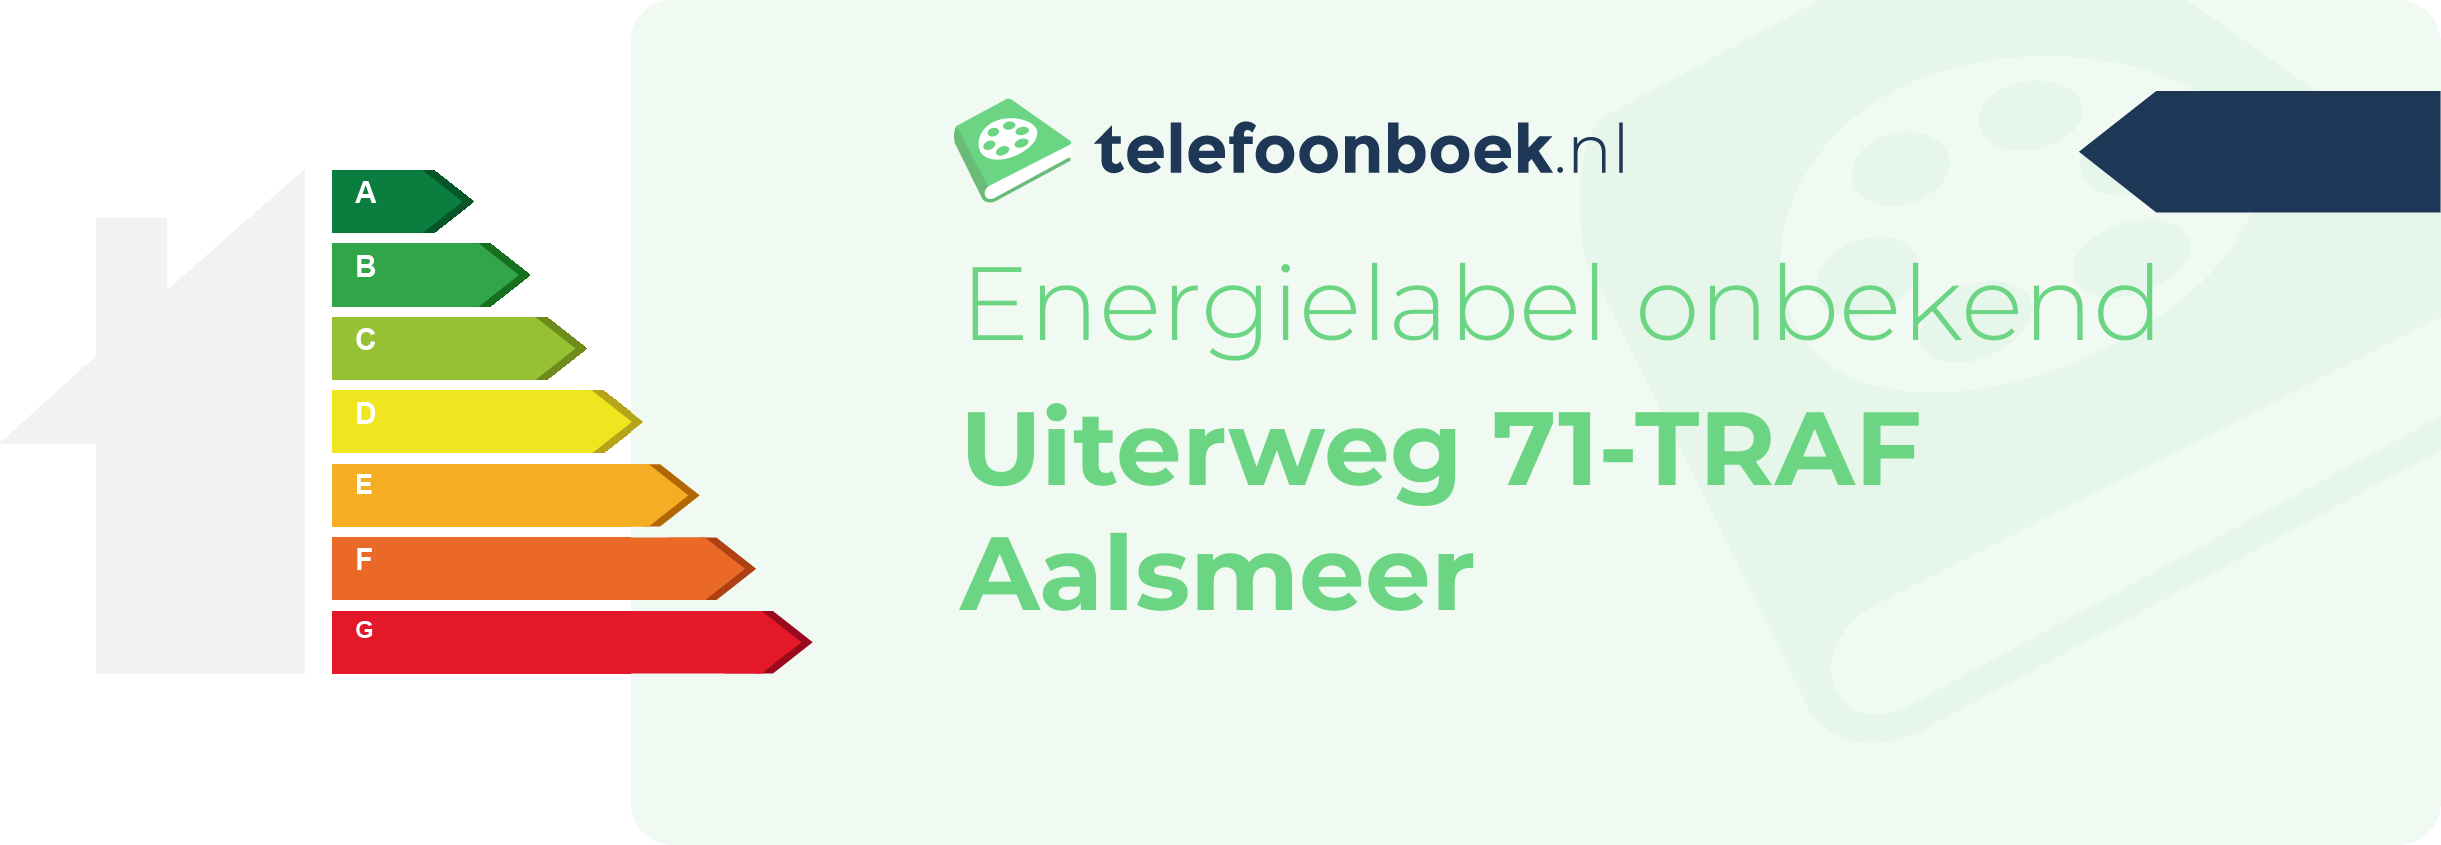 Energielabel Uiterweg 71-TRAF Aalsmeer